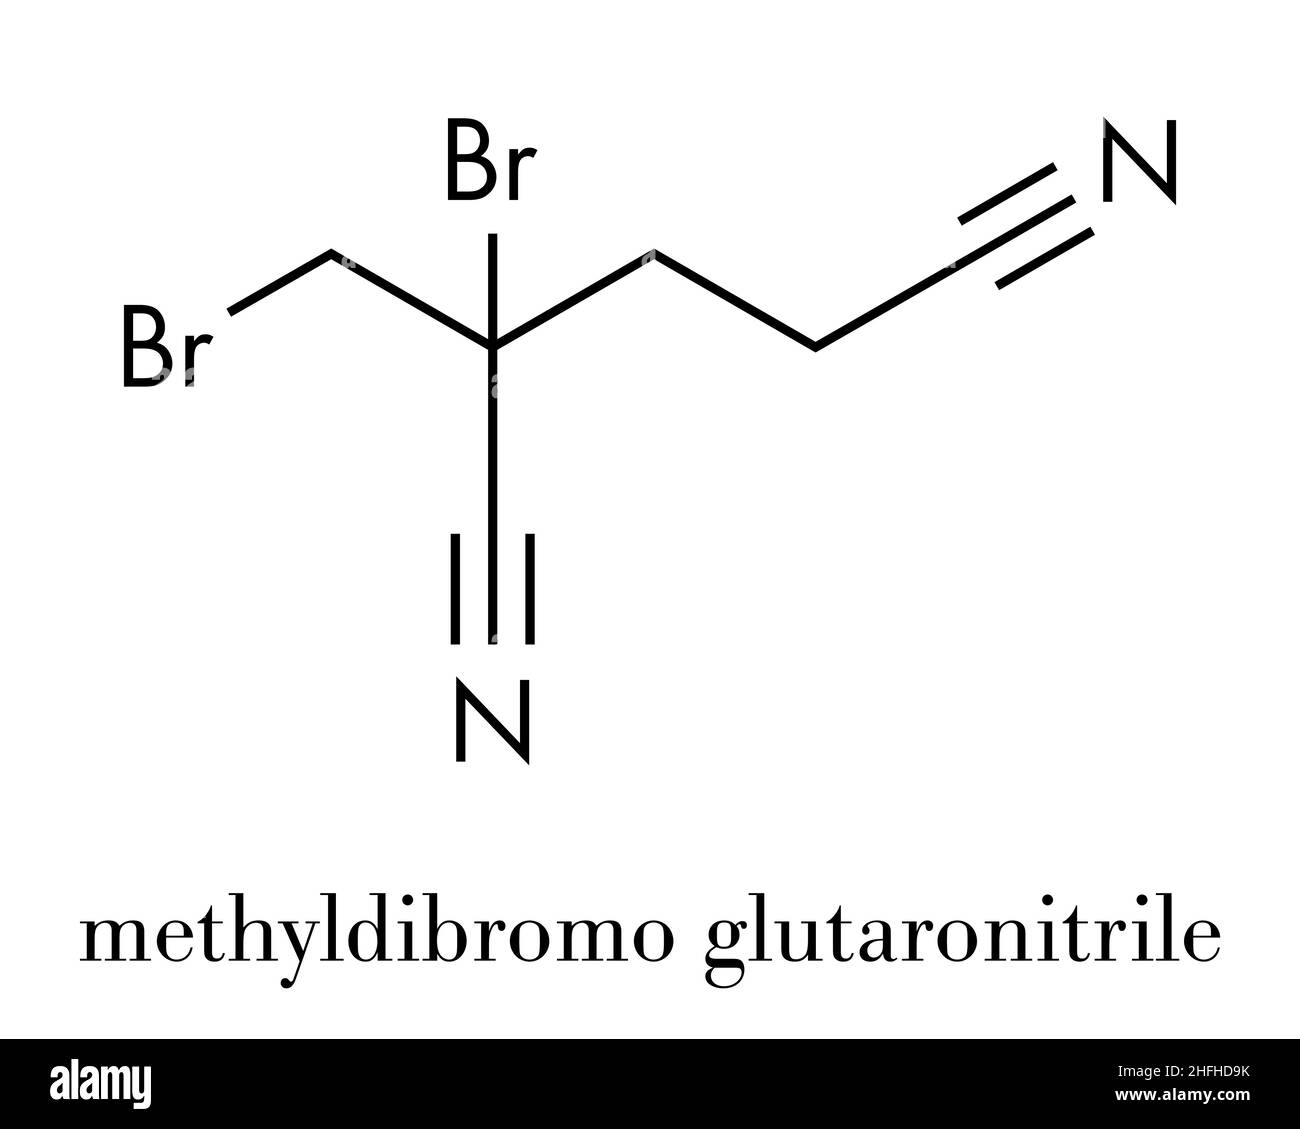 Methyldibromo glutaronitrile Konservierungsmittel Molekül. Gemeinsame allergen allergische Kontaktdermatitis verursacht. Skelettmuskulatur Formel. Stock Vektor